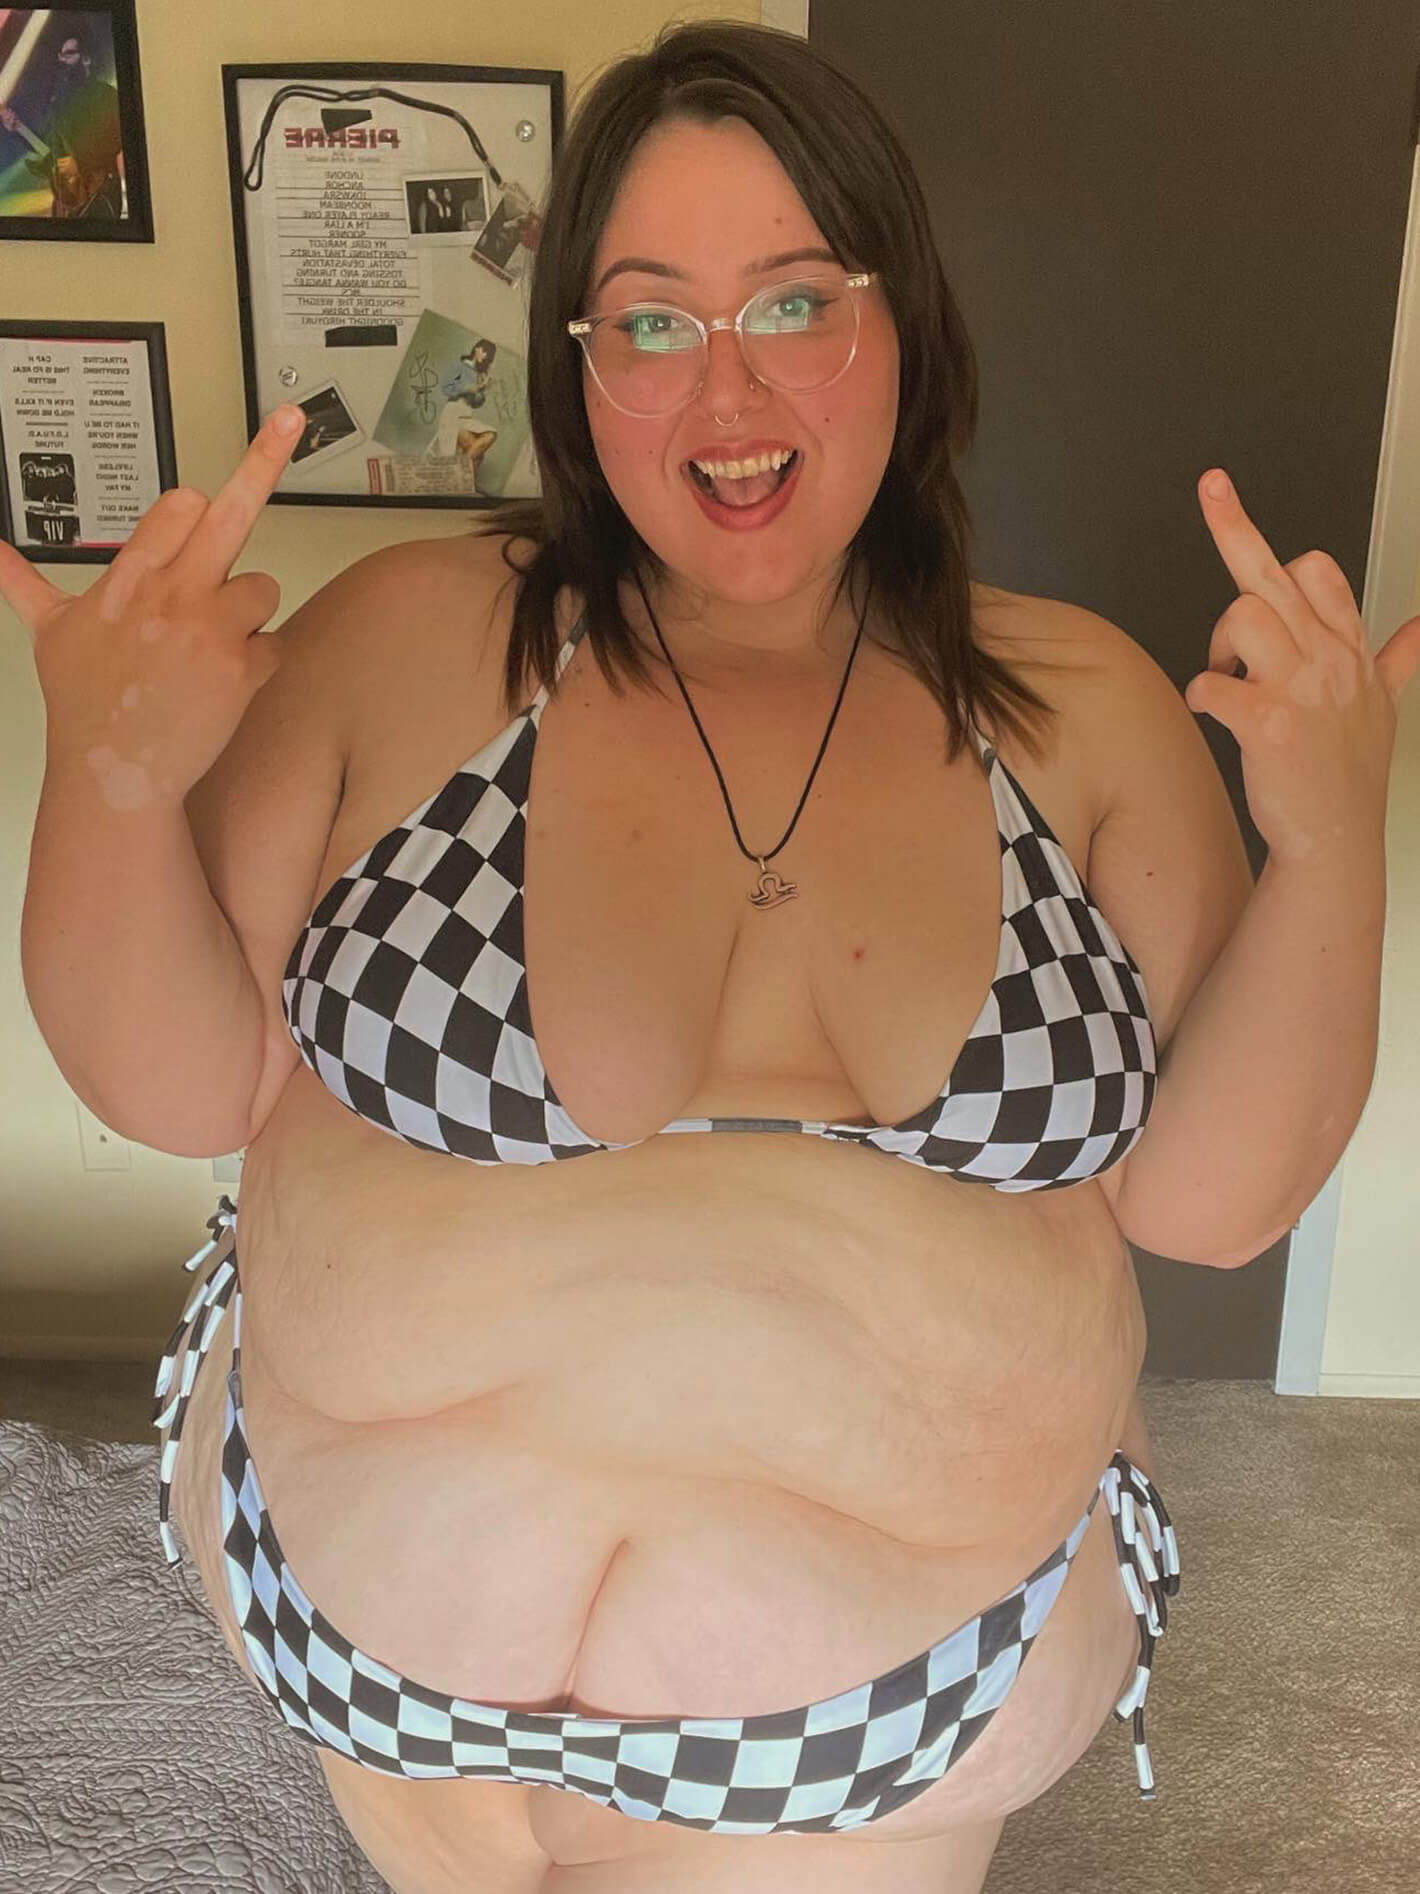 Checker fat bikini summer.